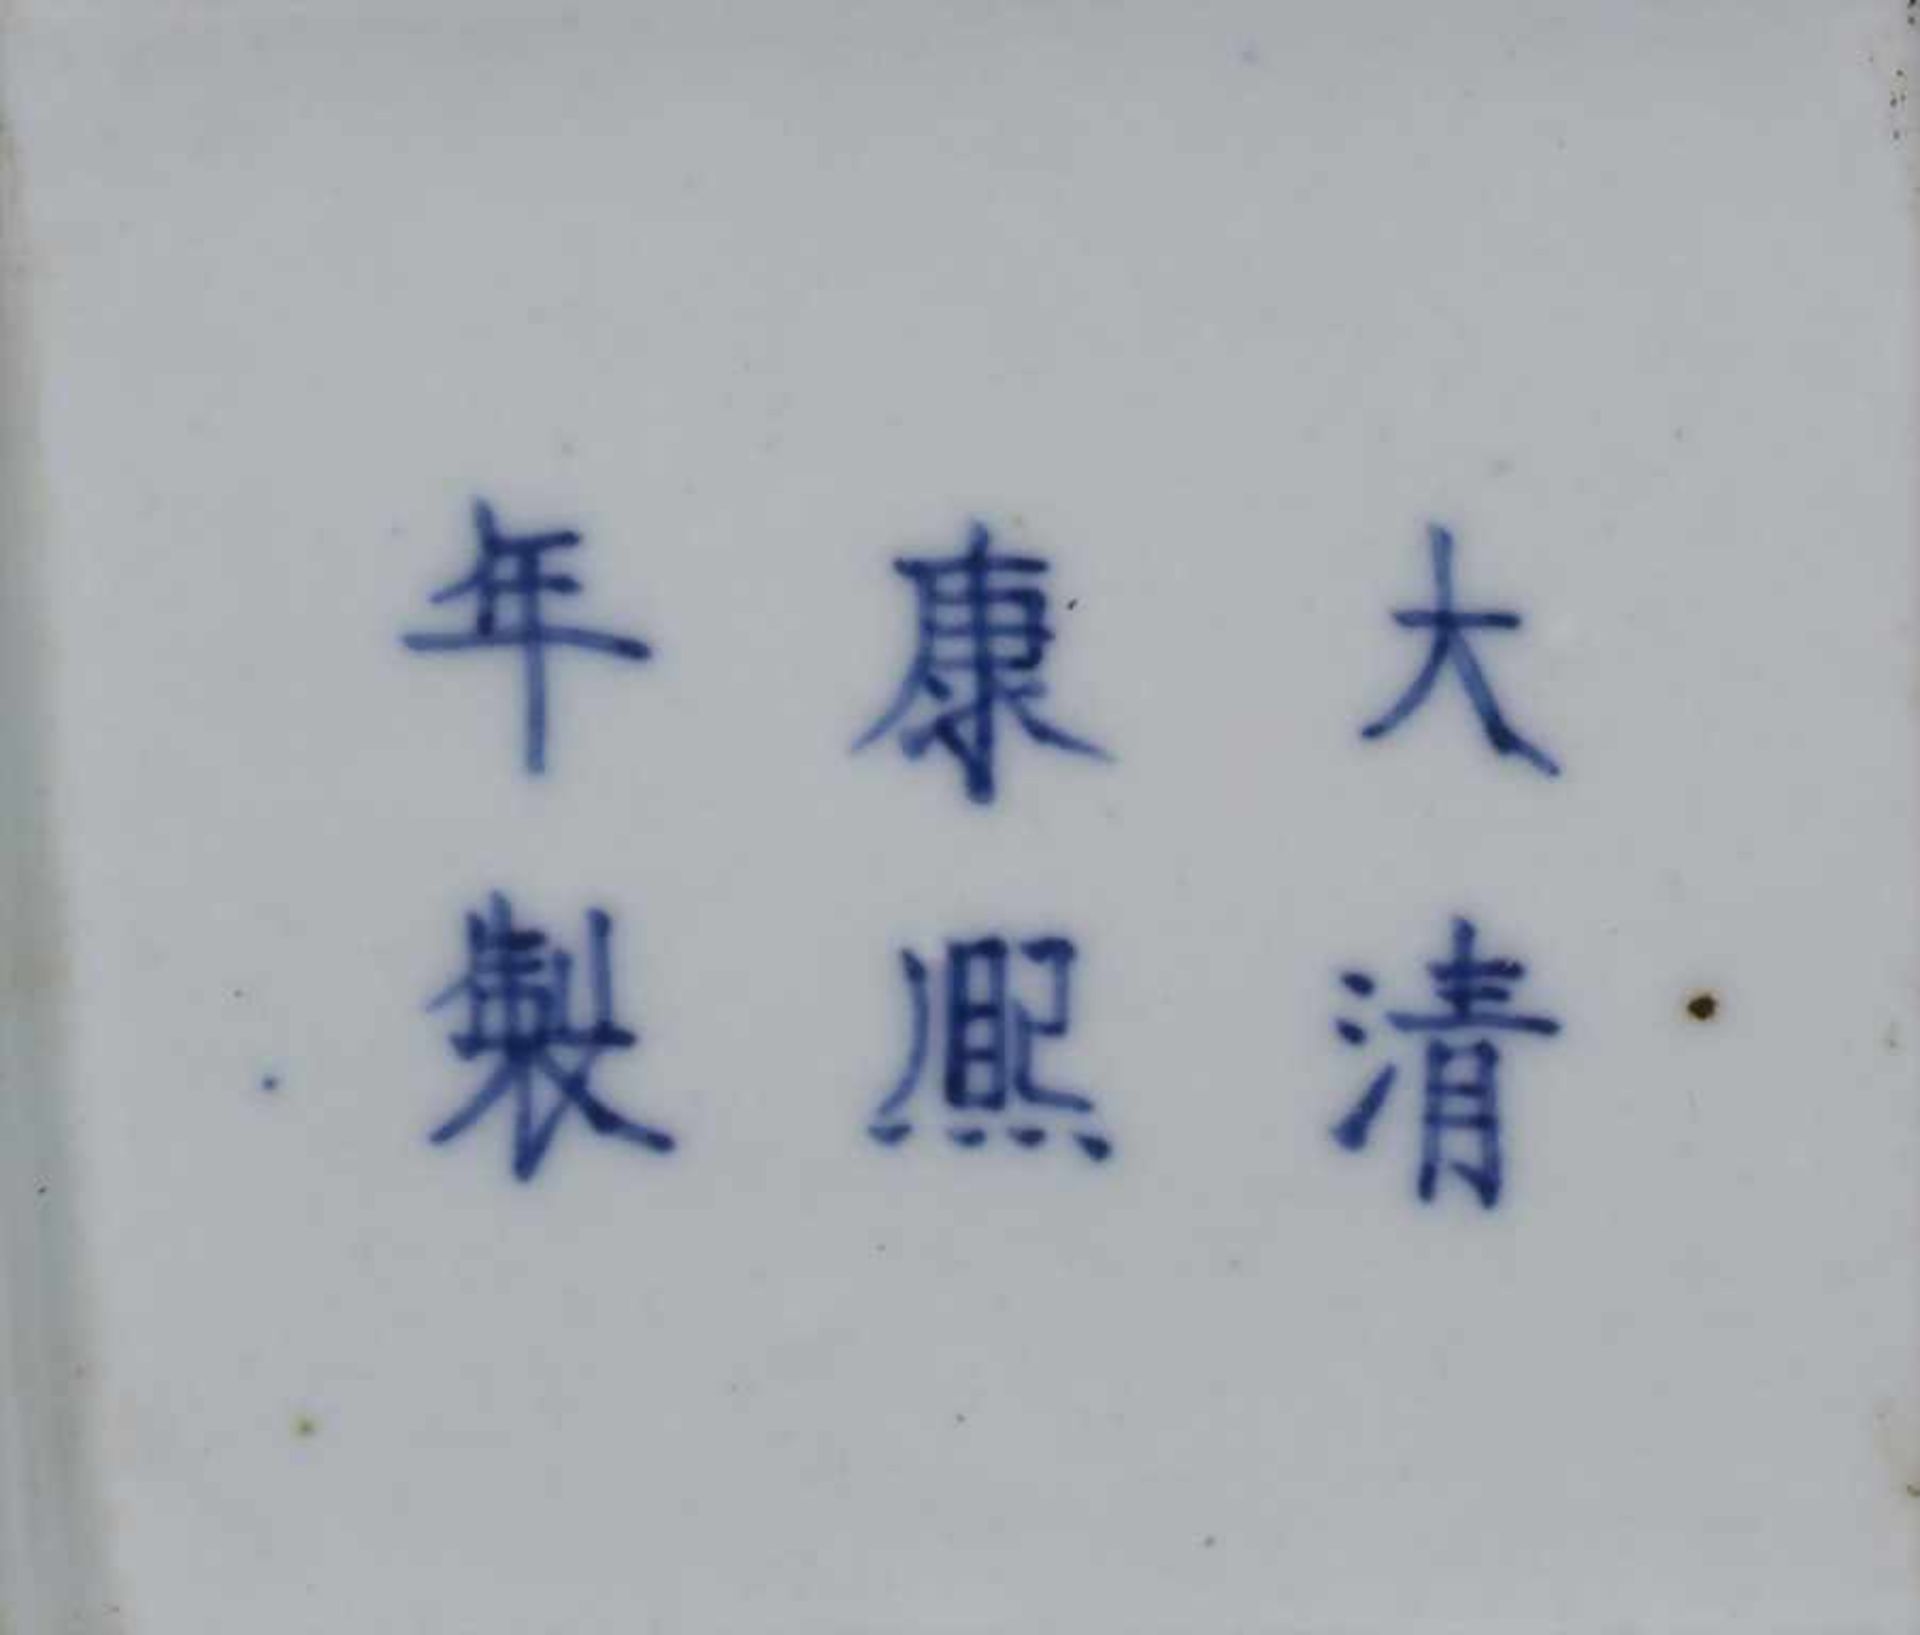 Ziervase, China, späte Qing-Dynastie, 19./20. Jh.Material: Porzellan, polychrom bemalt,Marke/ - Bild 15 aus 17